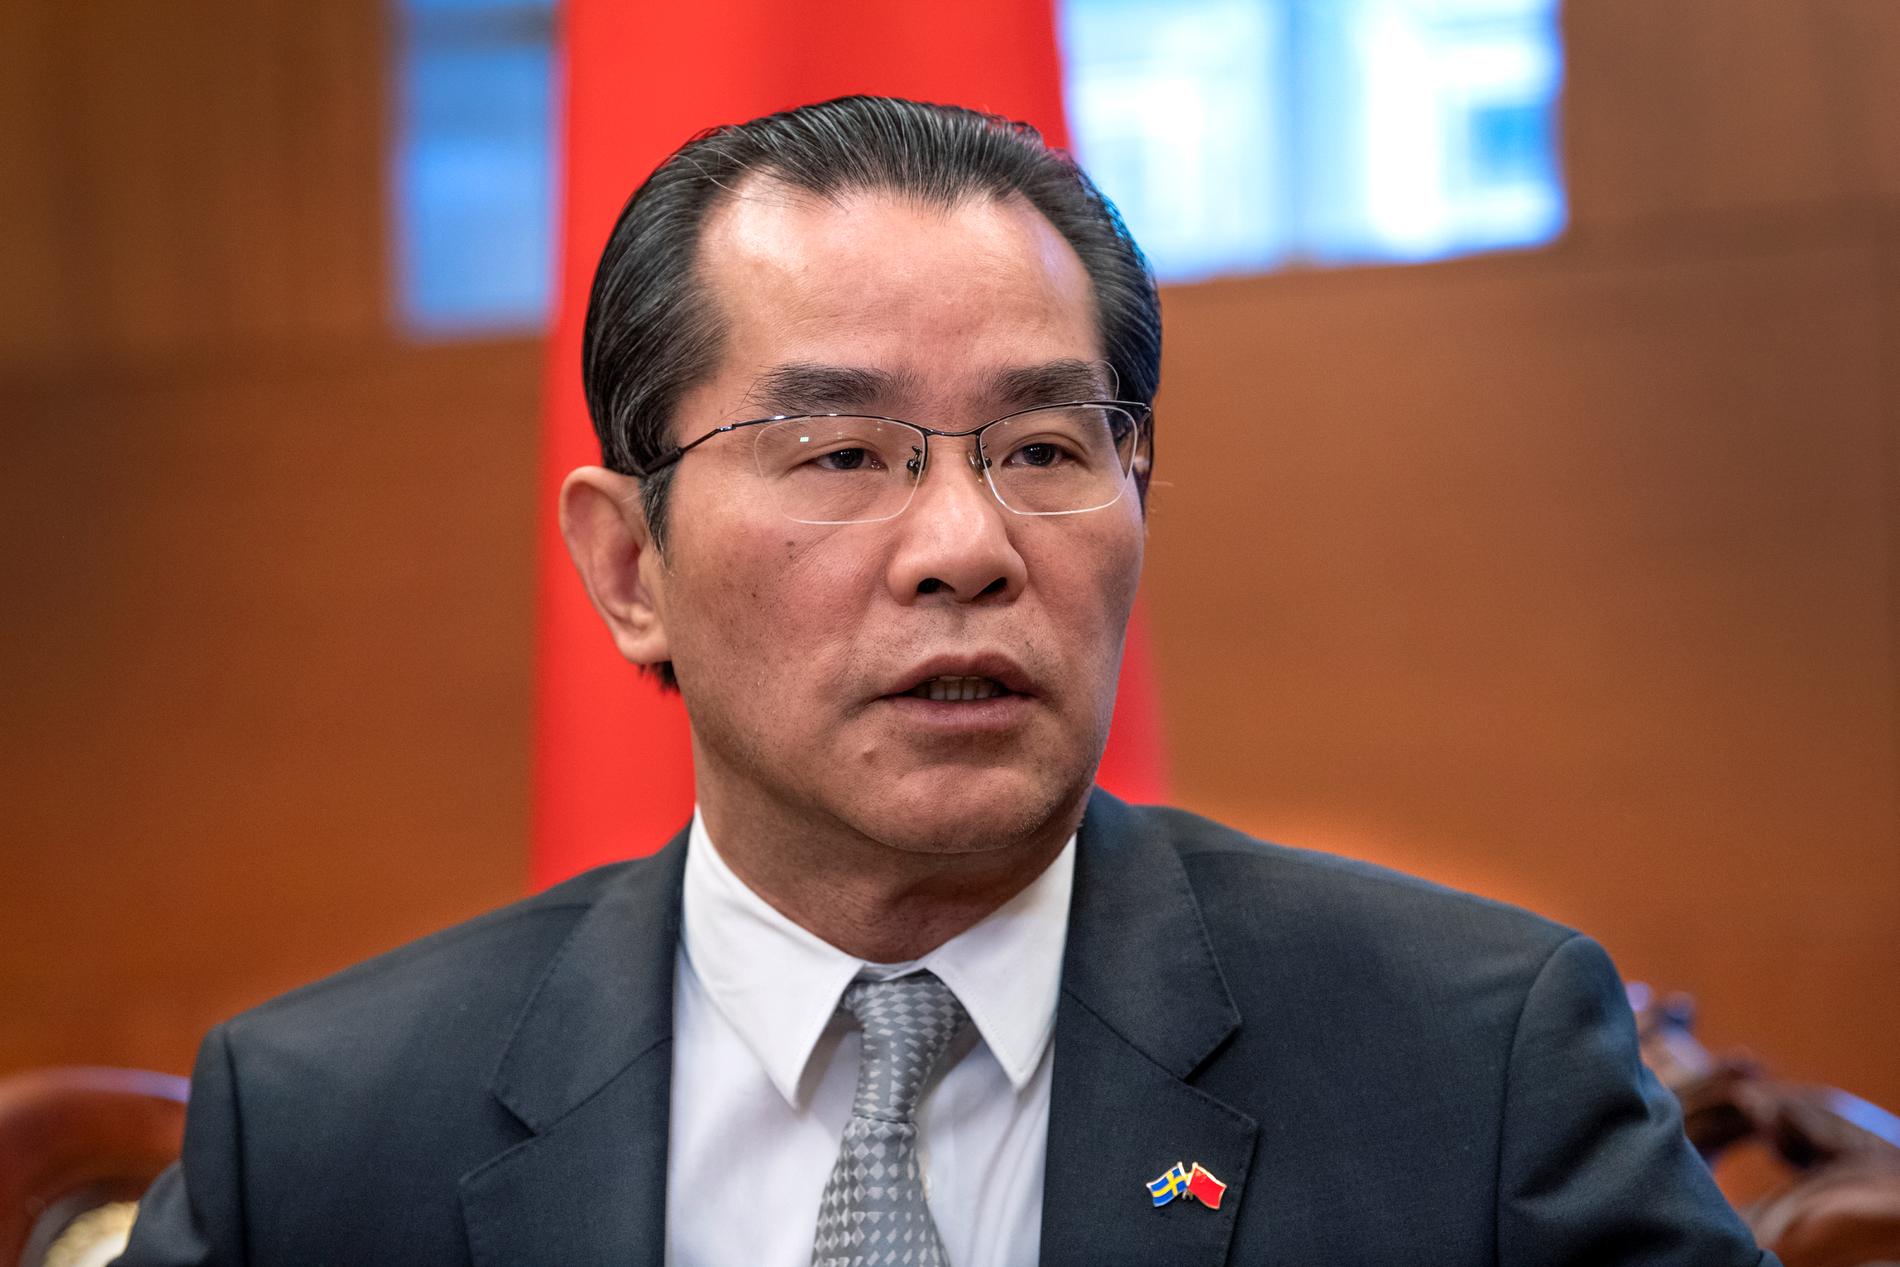 Kinas ambassadör i Sverige, Gui Congyou, kallar de påhopp som personer med asiatiskt utseende fått utstå för rasism.